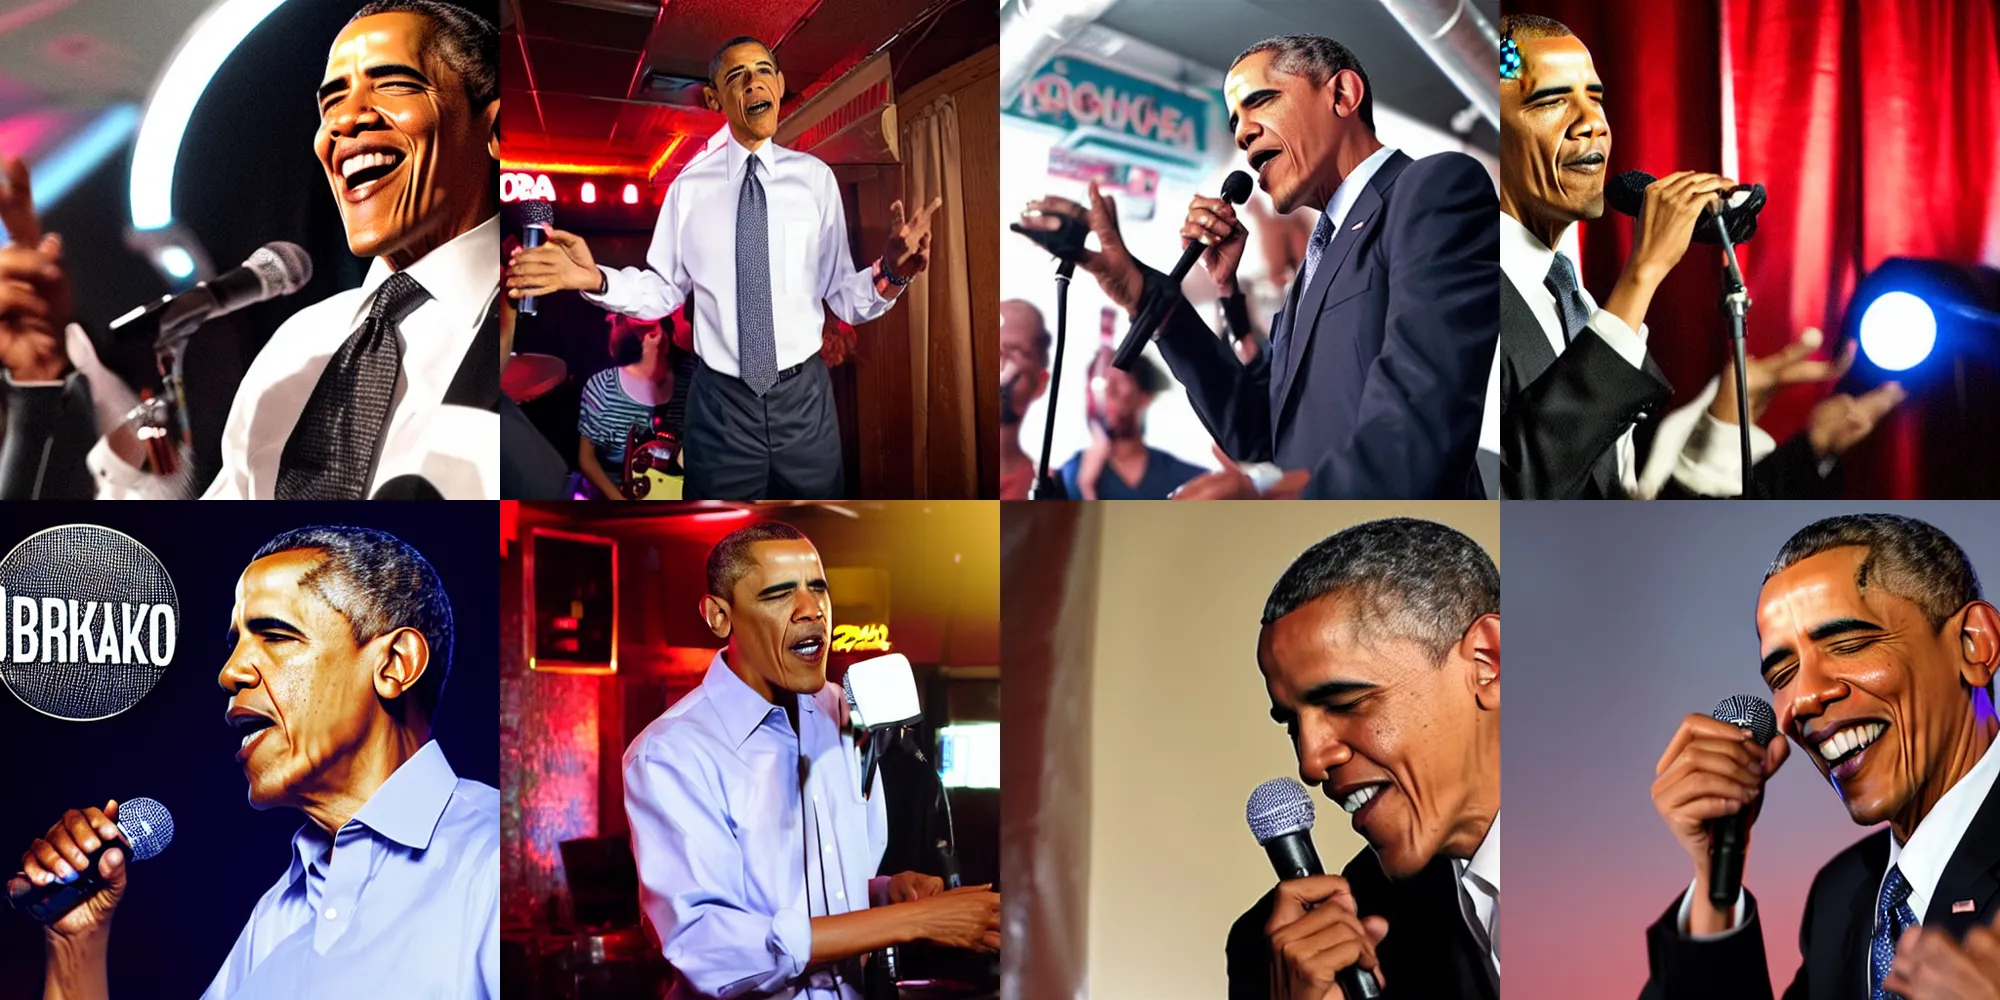 Prompt: drunk Obama singing at karaoke bar